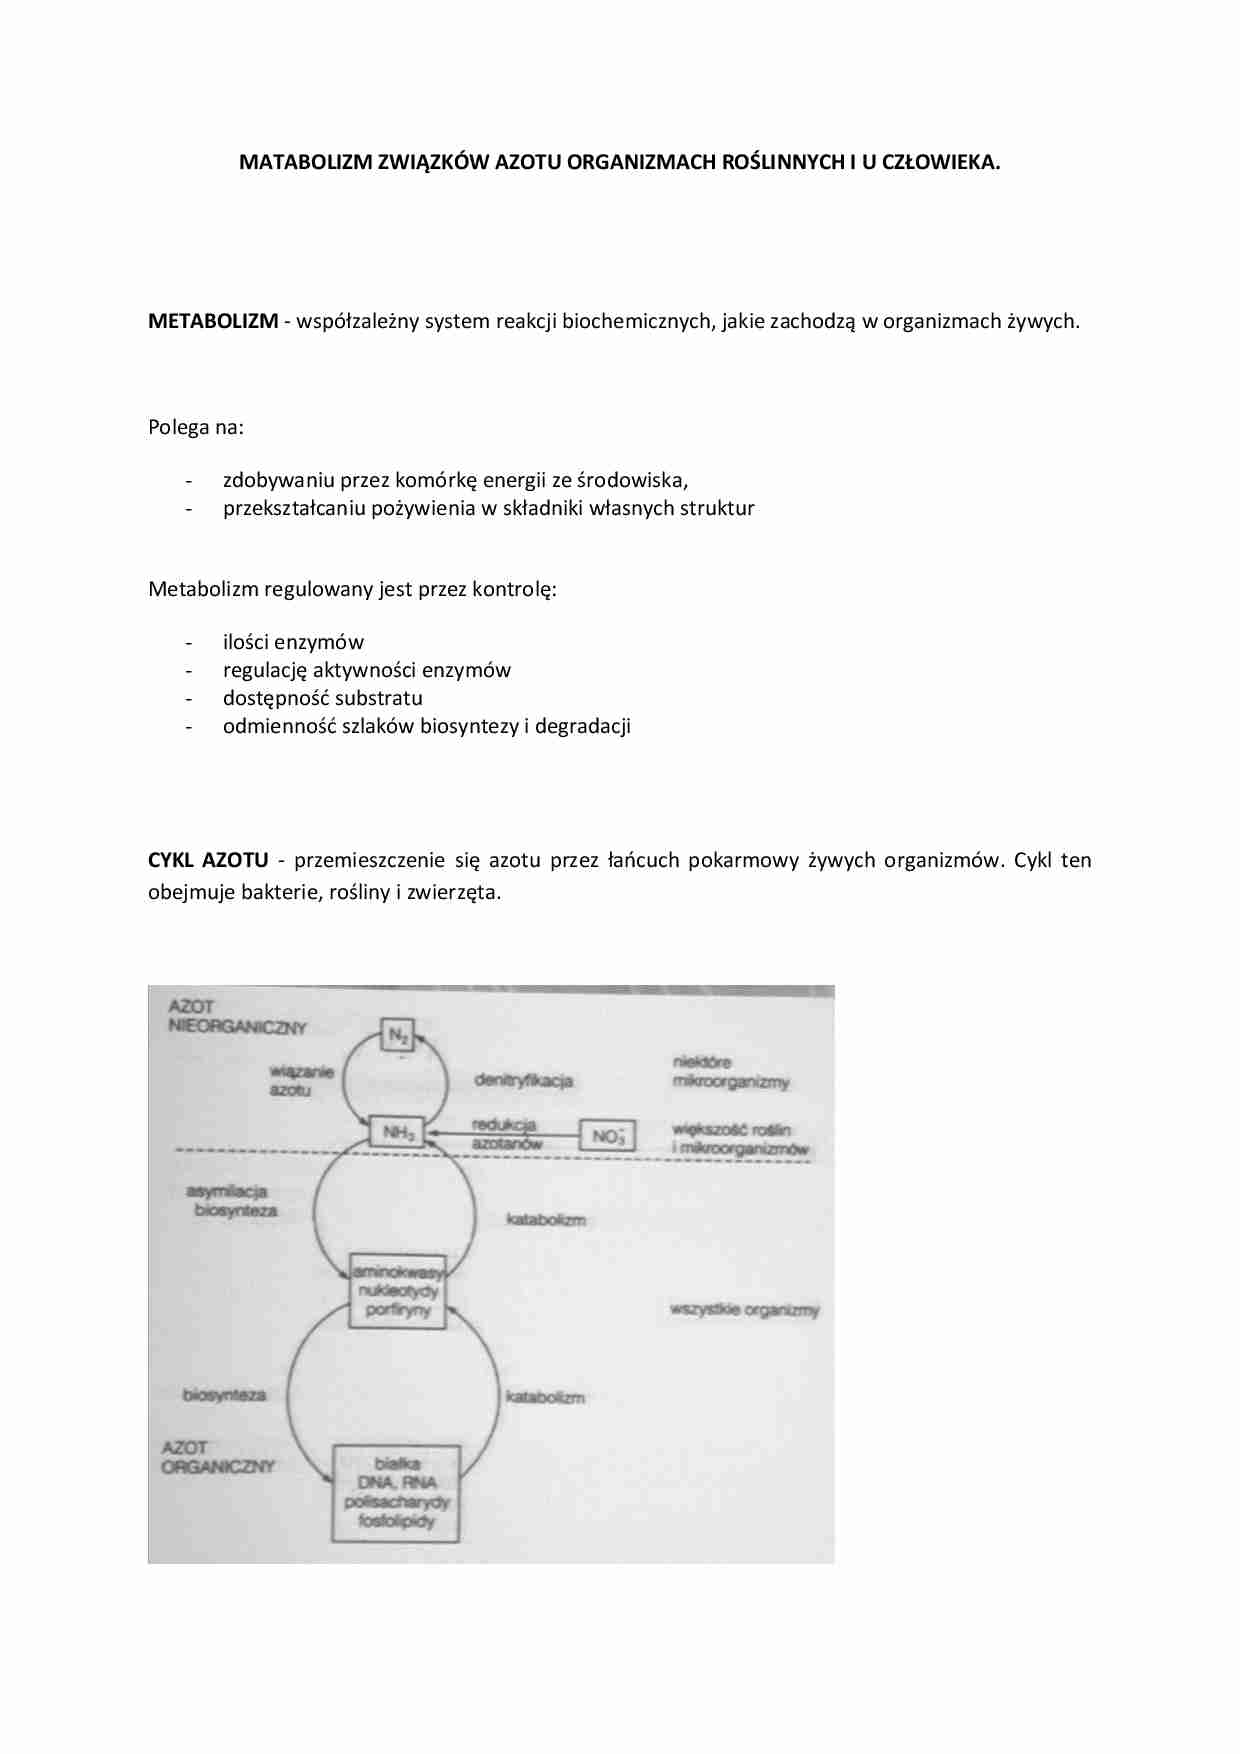 Metabolizm związków azotu w organizmach roślinnych i u człowieka - strona 1